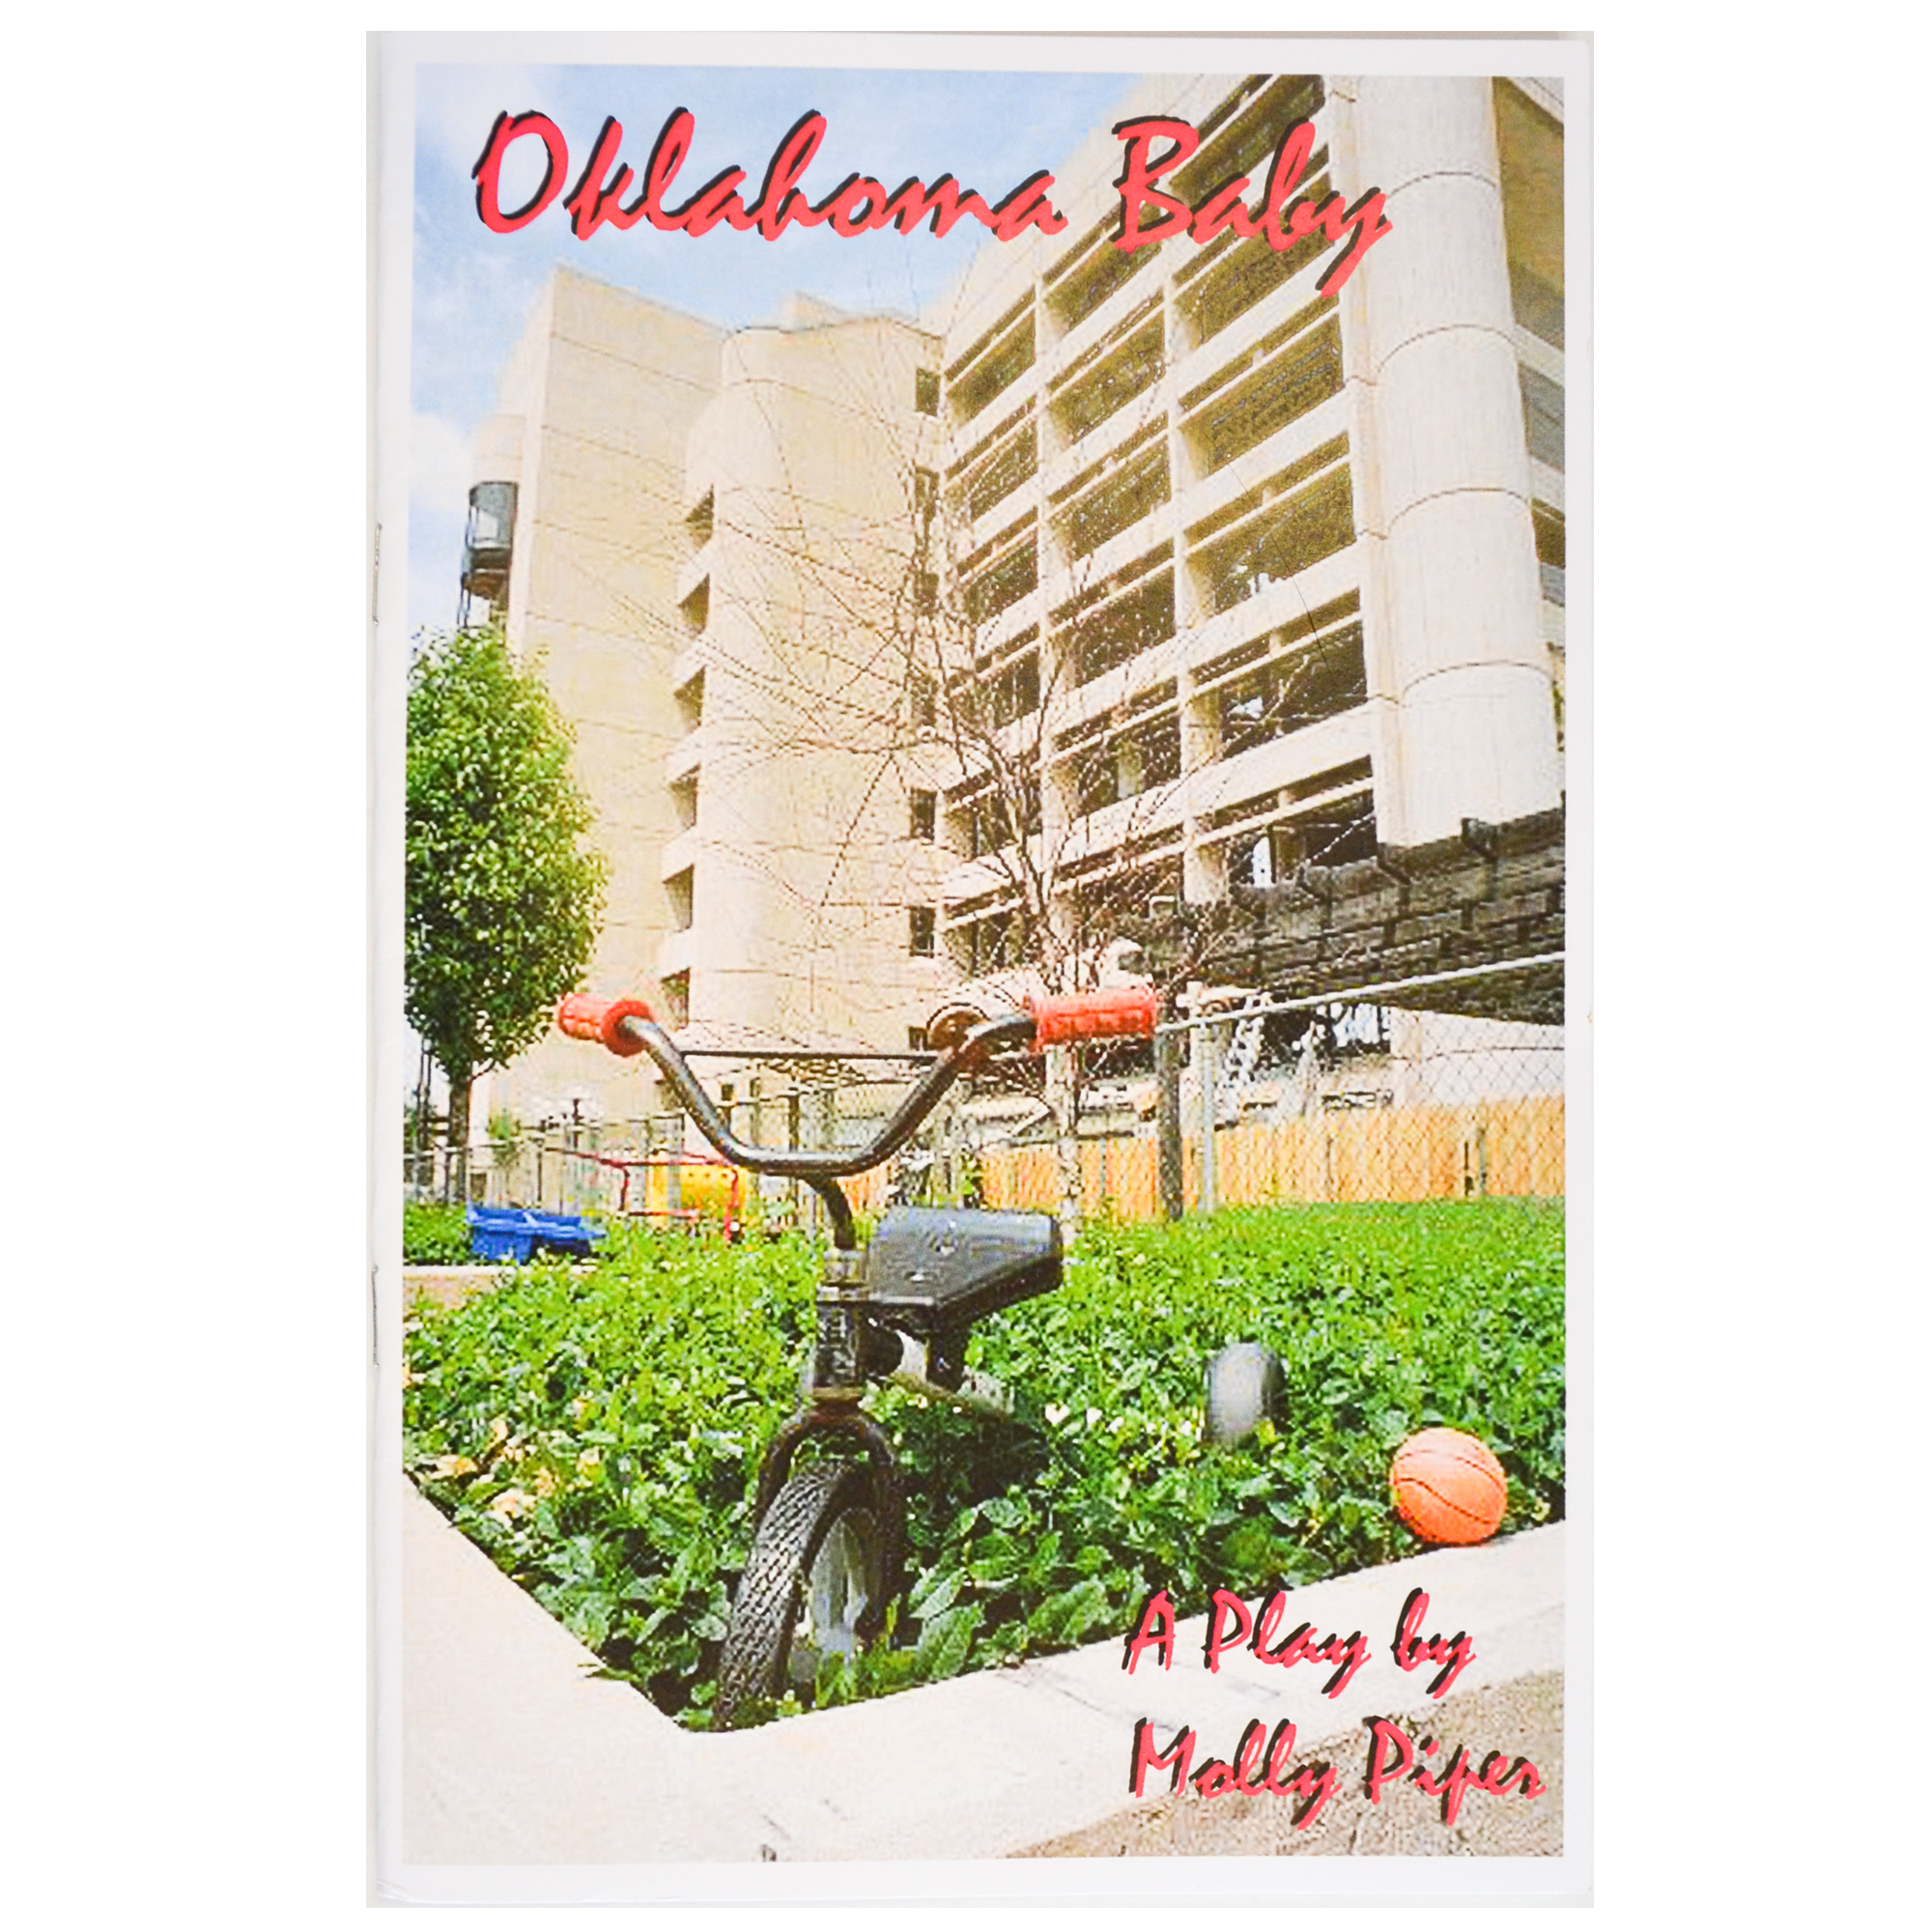 Oklahoma Baby by Molly Piper